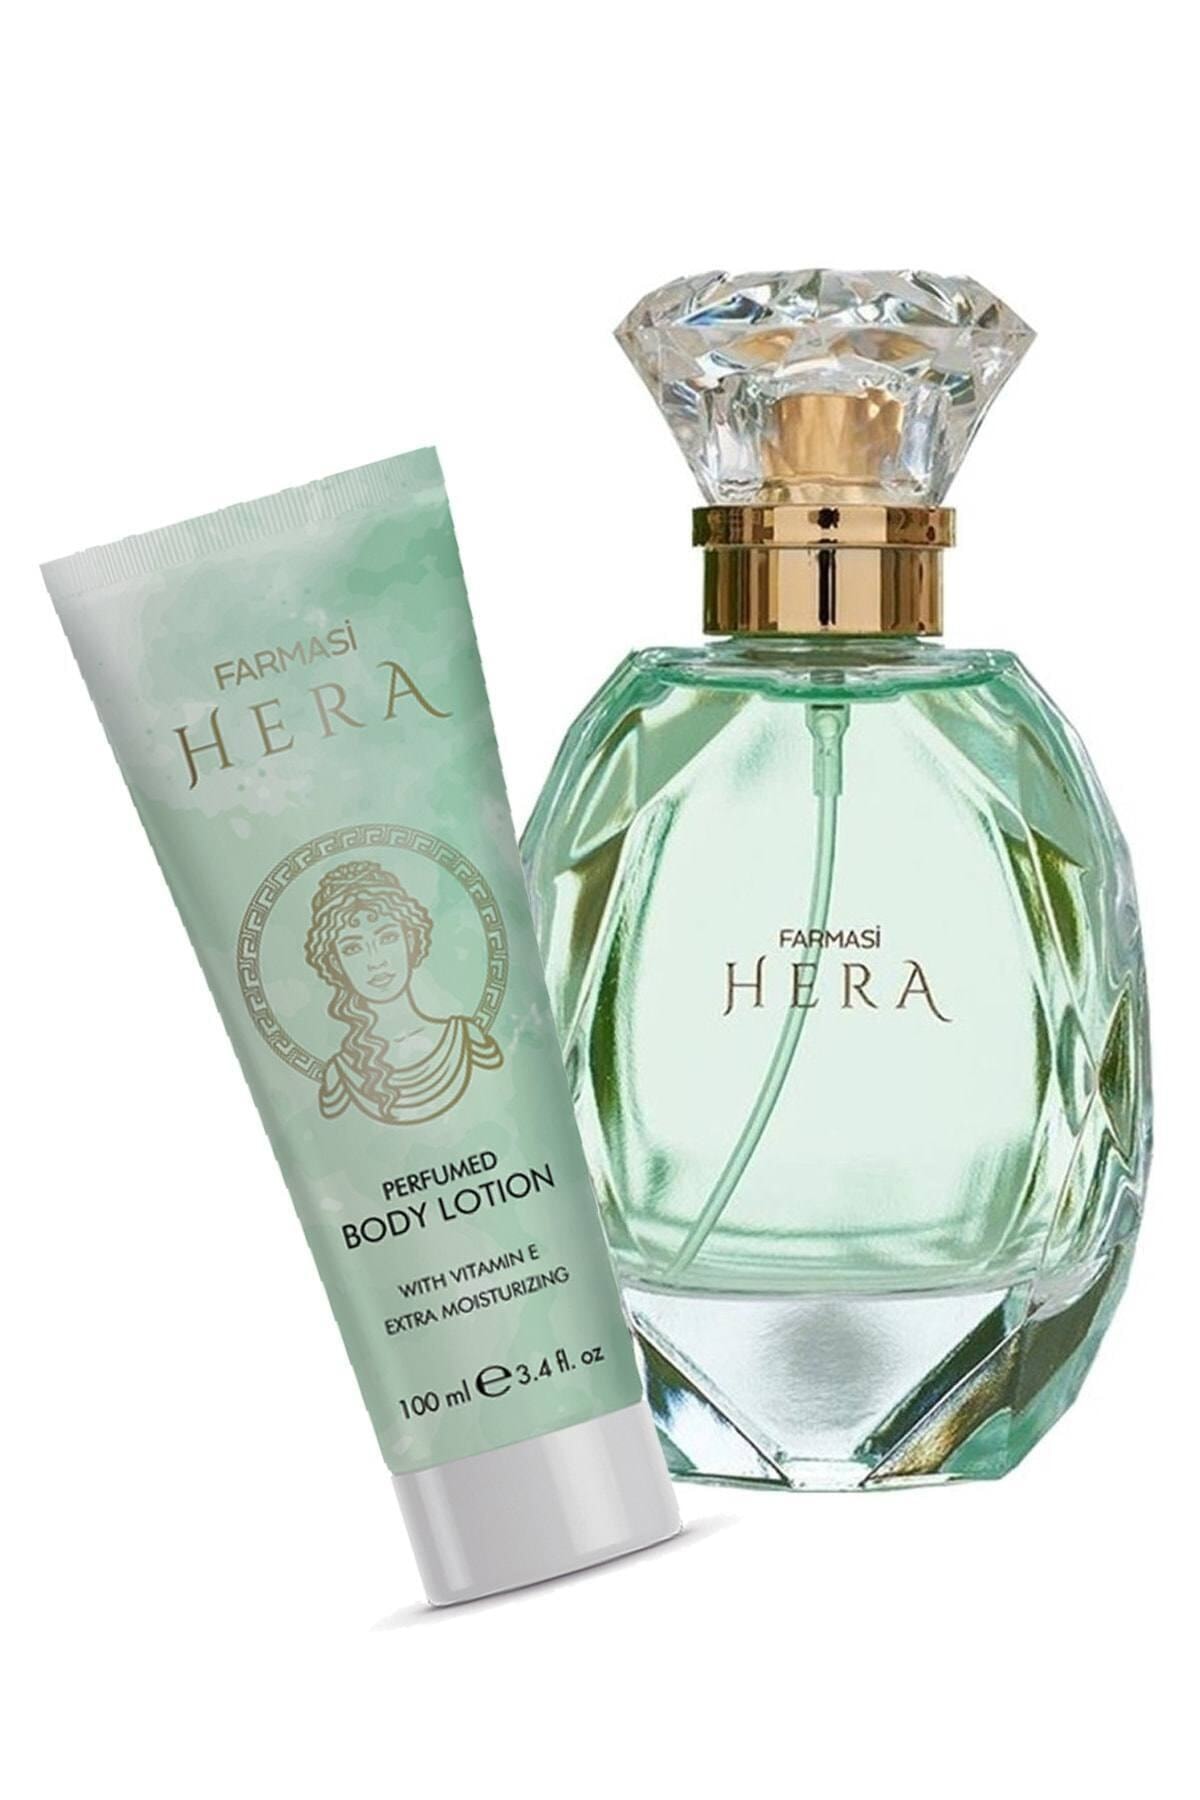 Farmasi Hera Edp 65 Ml Kadın Parfümü + Hera 100 Ml Parfümlü Vücut Losyonu 2'li Set